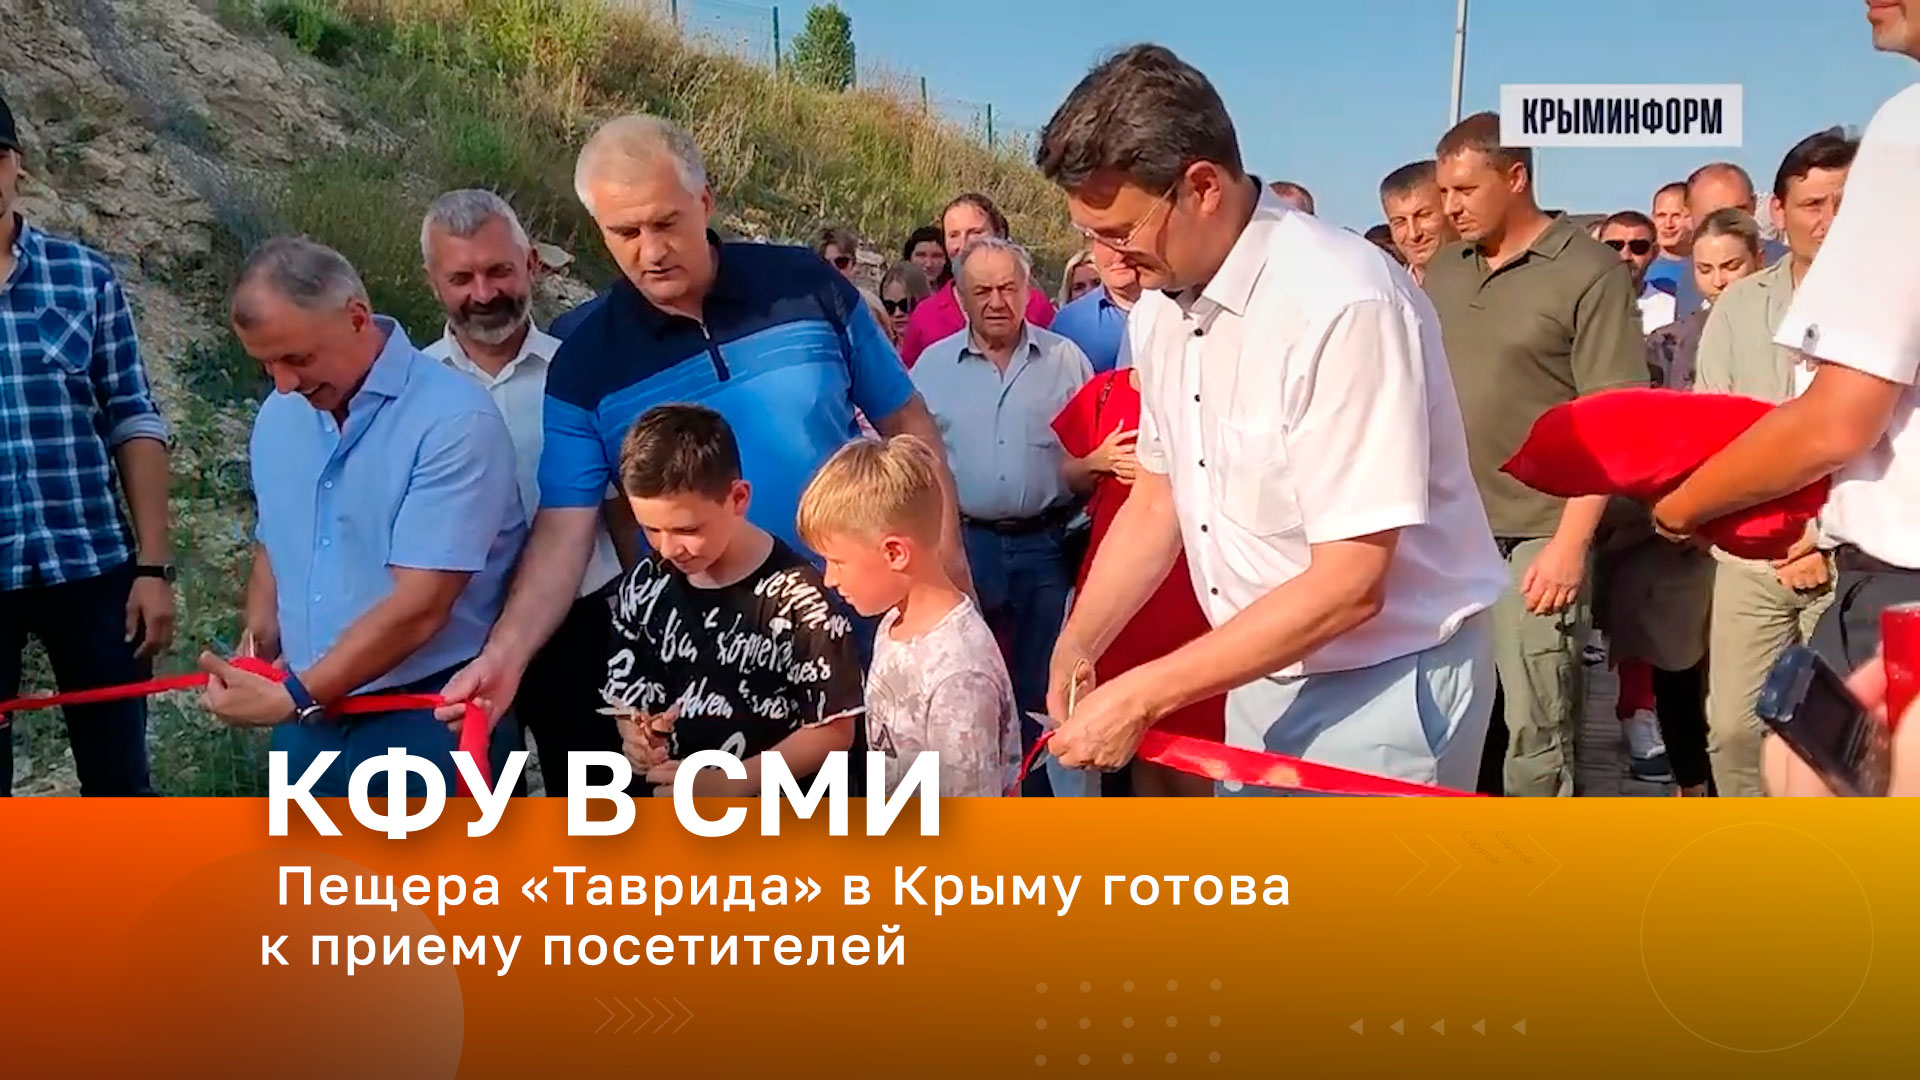 Найденная при строительстве трассы пещера в Крыму готова к приему посетителей